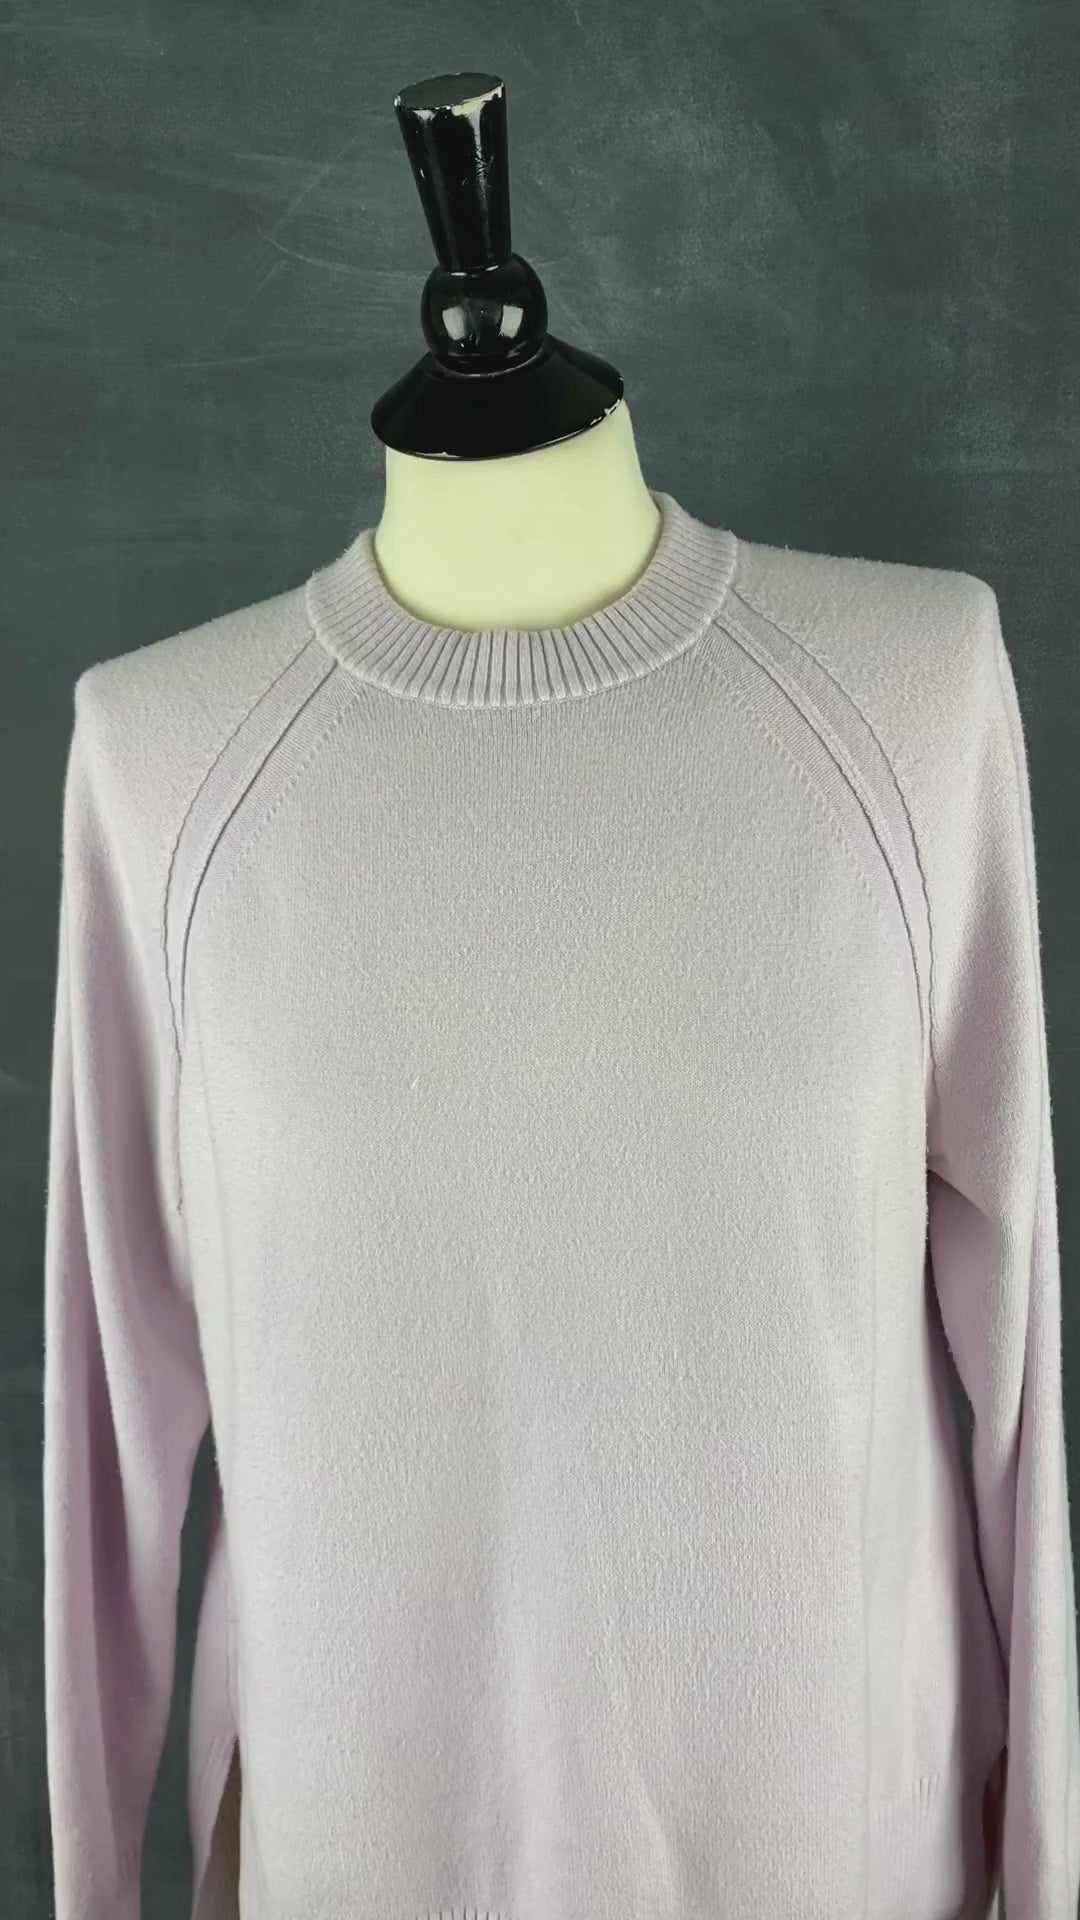 Chandail French Connection ample en tricot lilas. Vue de la vidéo qui présente tous les détails du tricot.